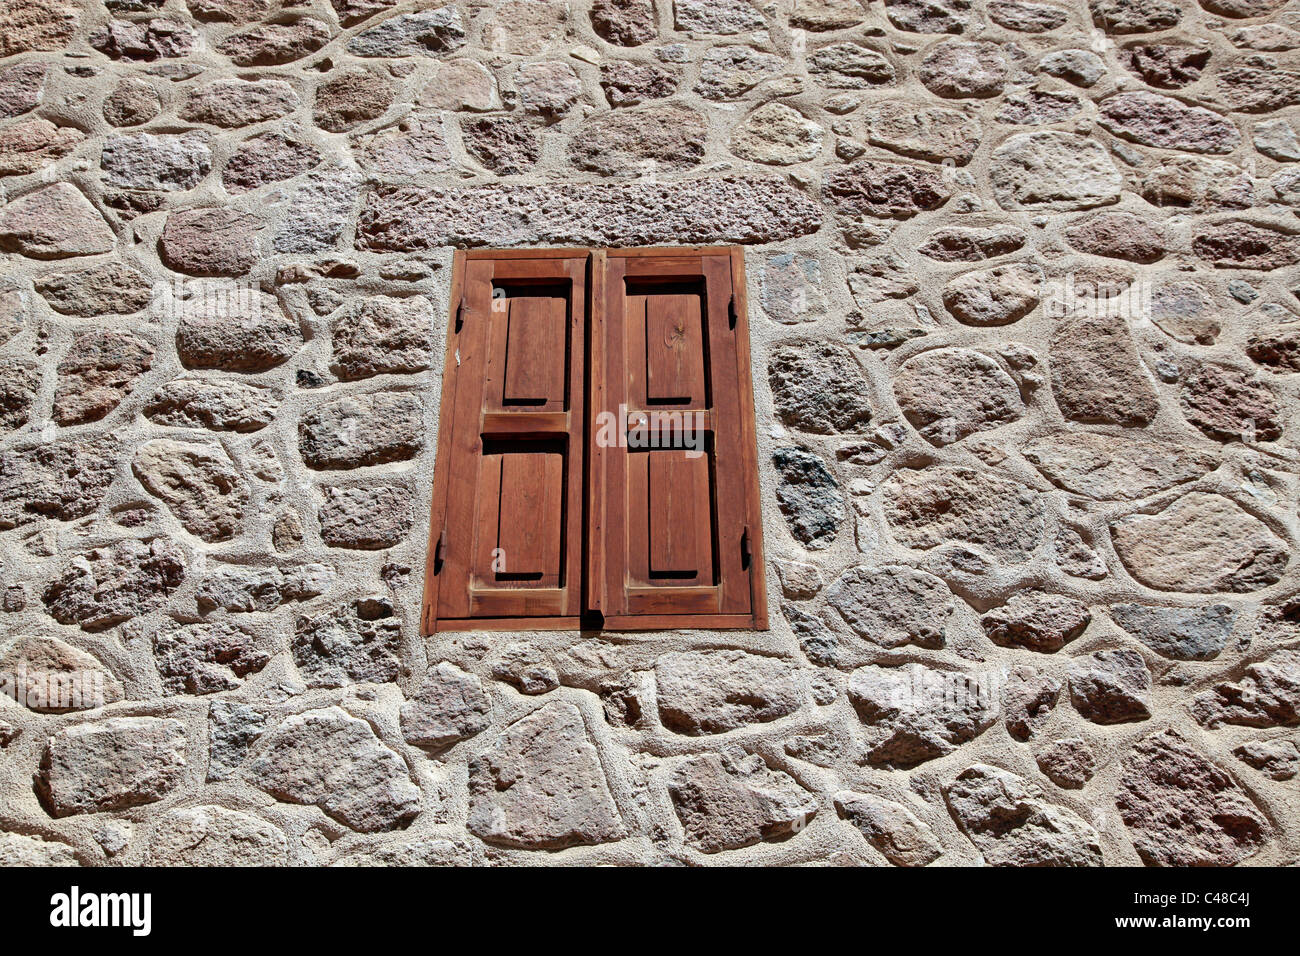 Fenêtre à volets dans un mur de pierre à l'arrière-plan le monastère de Sainte Catherine, au sud de la péninsule du Sinaï, Égypte Banque D'Images